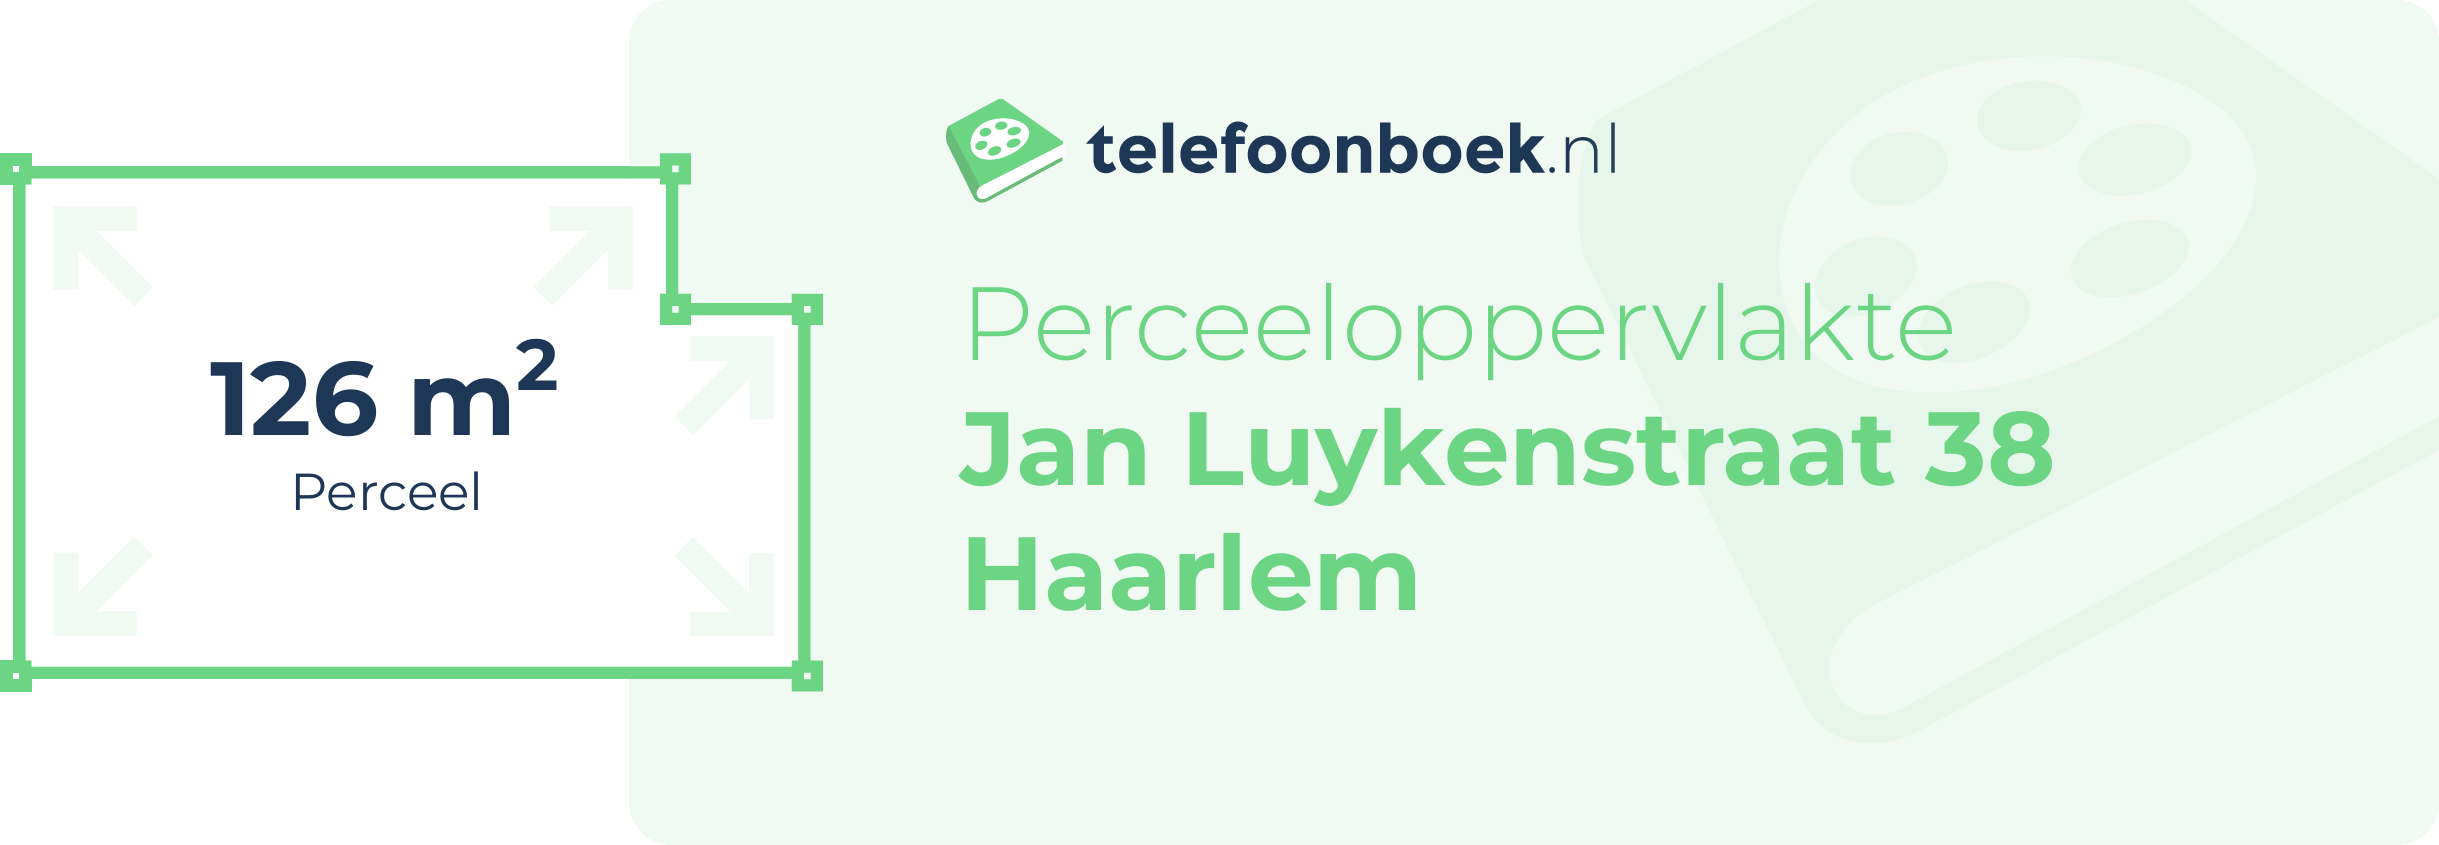 Perceeloppervlakte Jan Luykenstraat 38 Haarlem